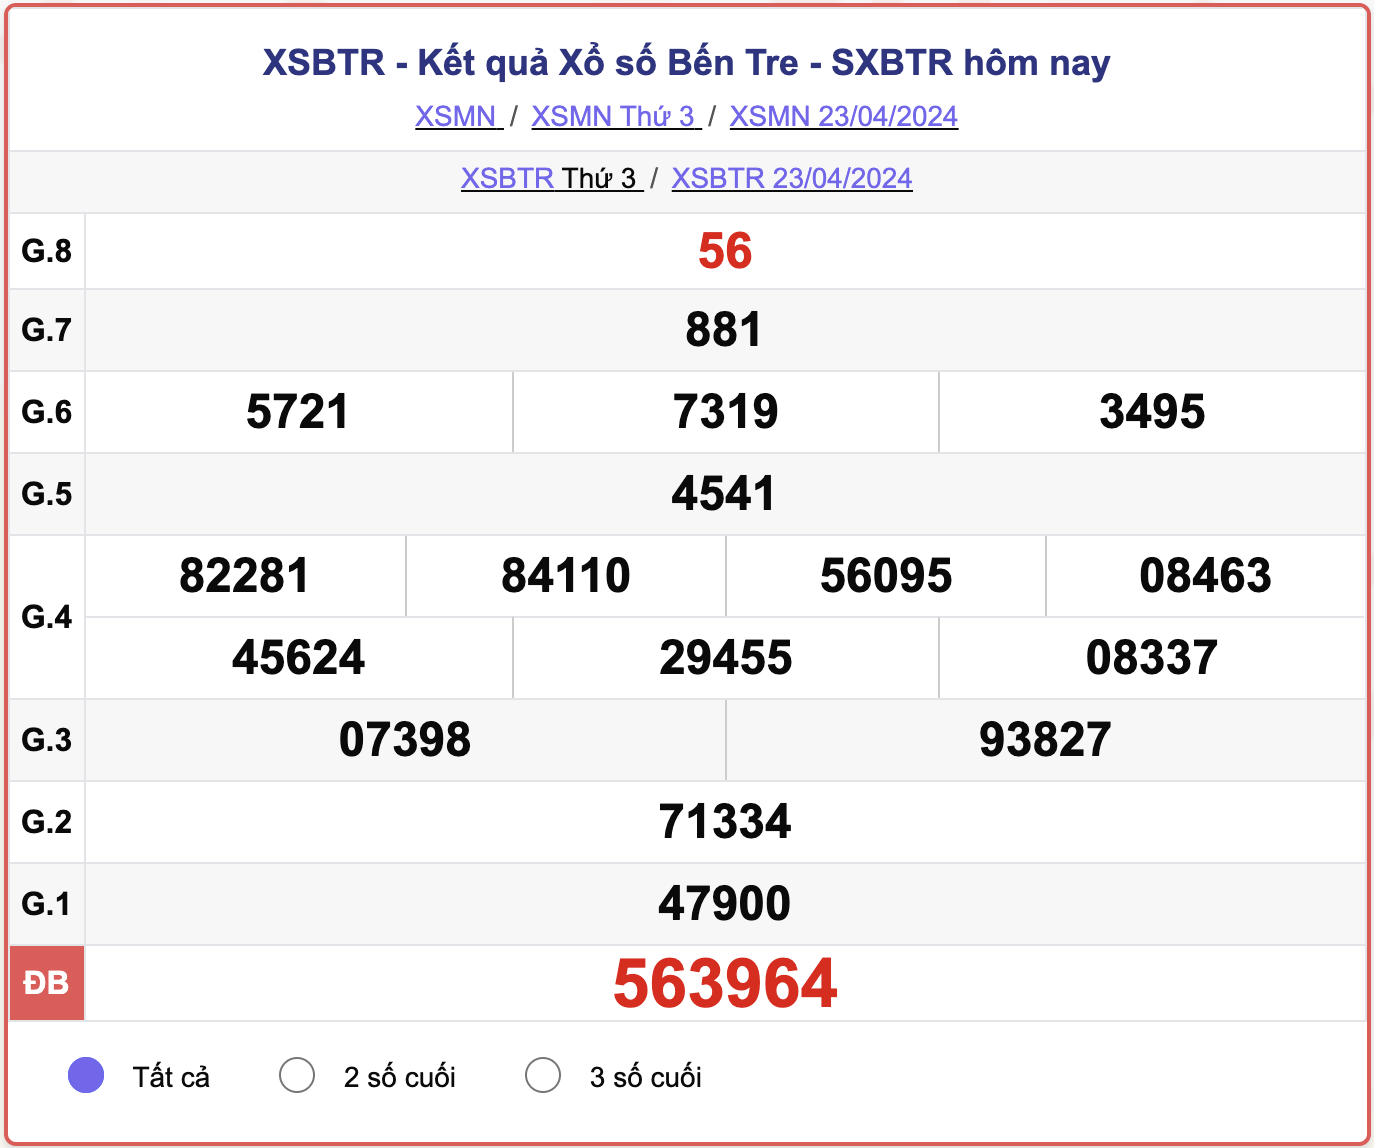 XSBTR thứ 3, kết quả xổ số Bến Tre ngày 23/4/2024.